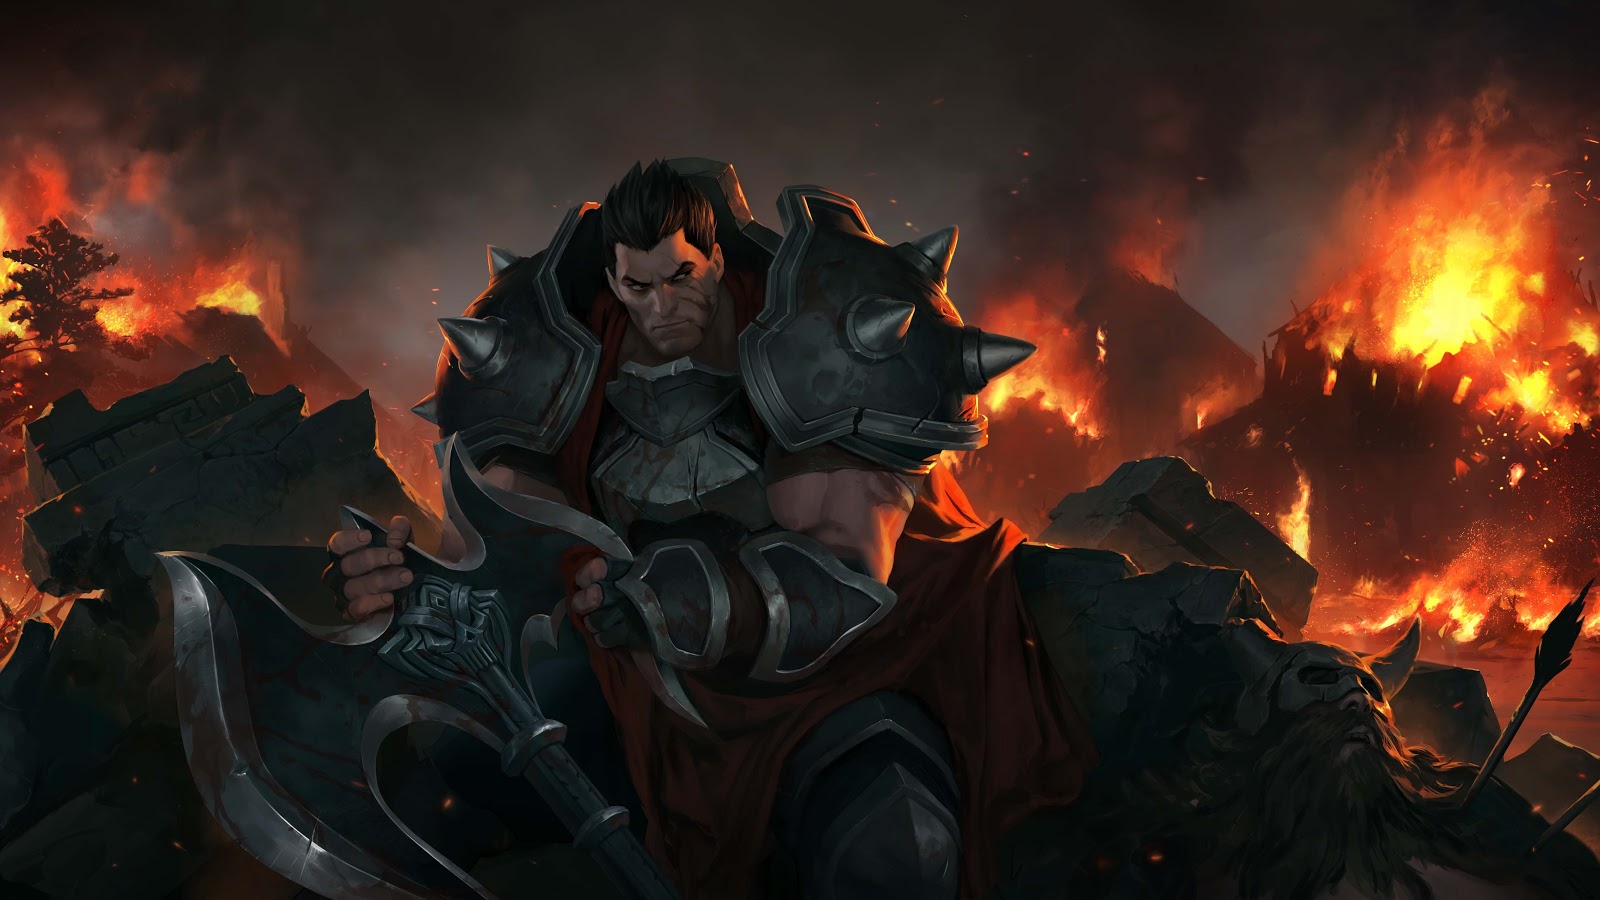 Darius está sentado entre los escombros con el filo de su hacha en las manos, mirando la destrucción ardiente a sus espaldas.